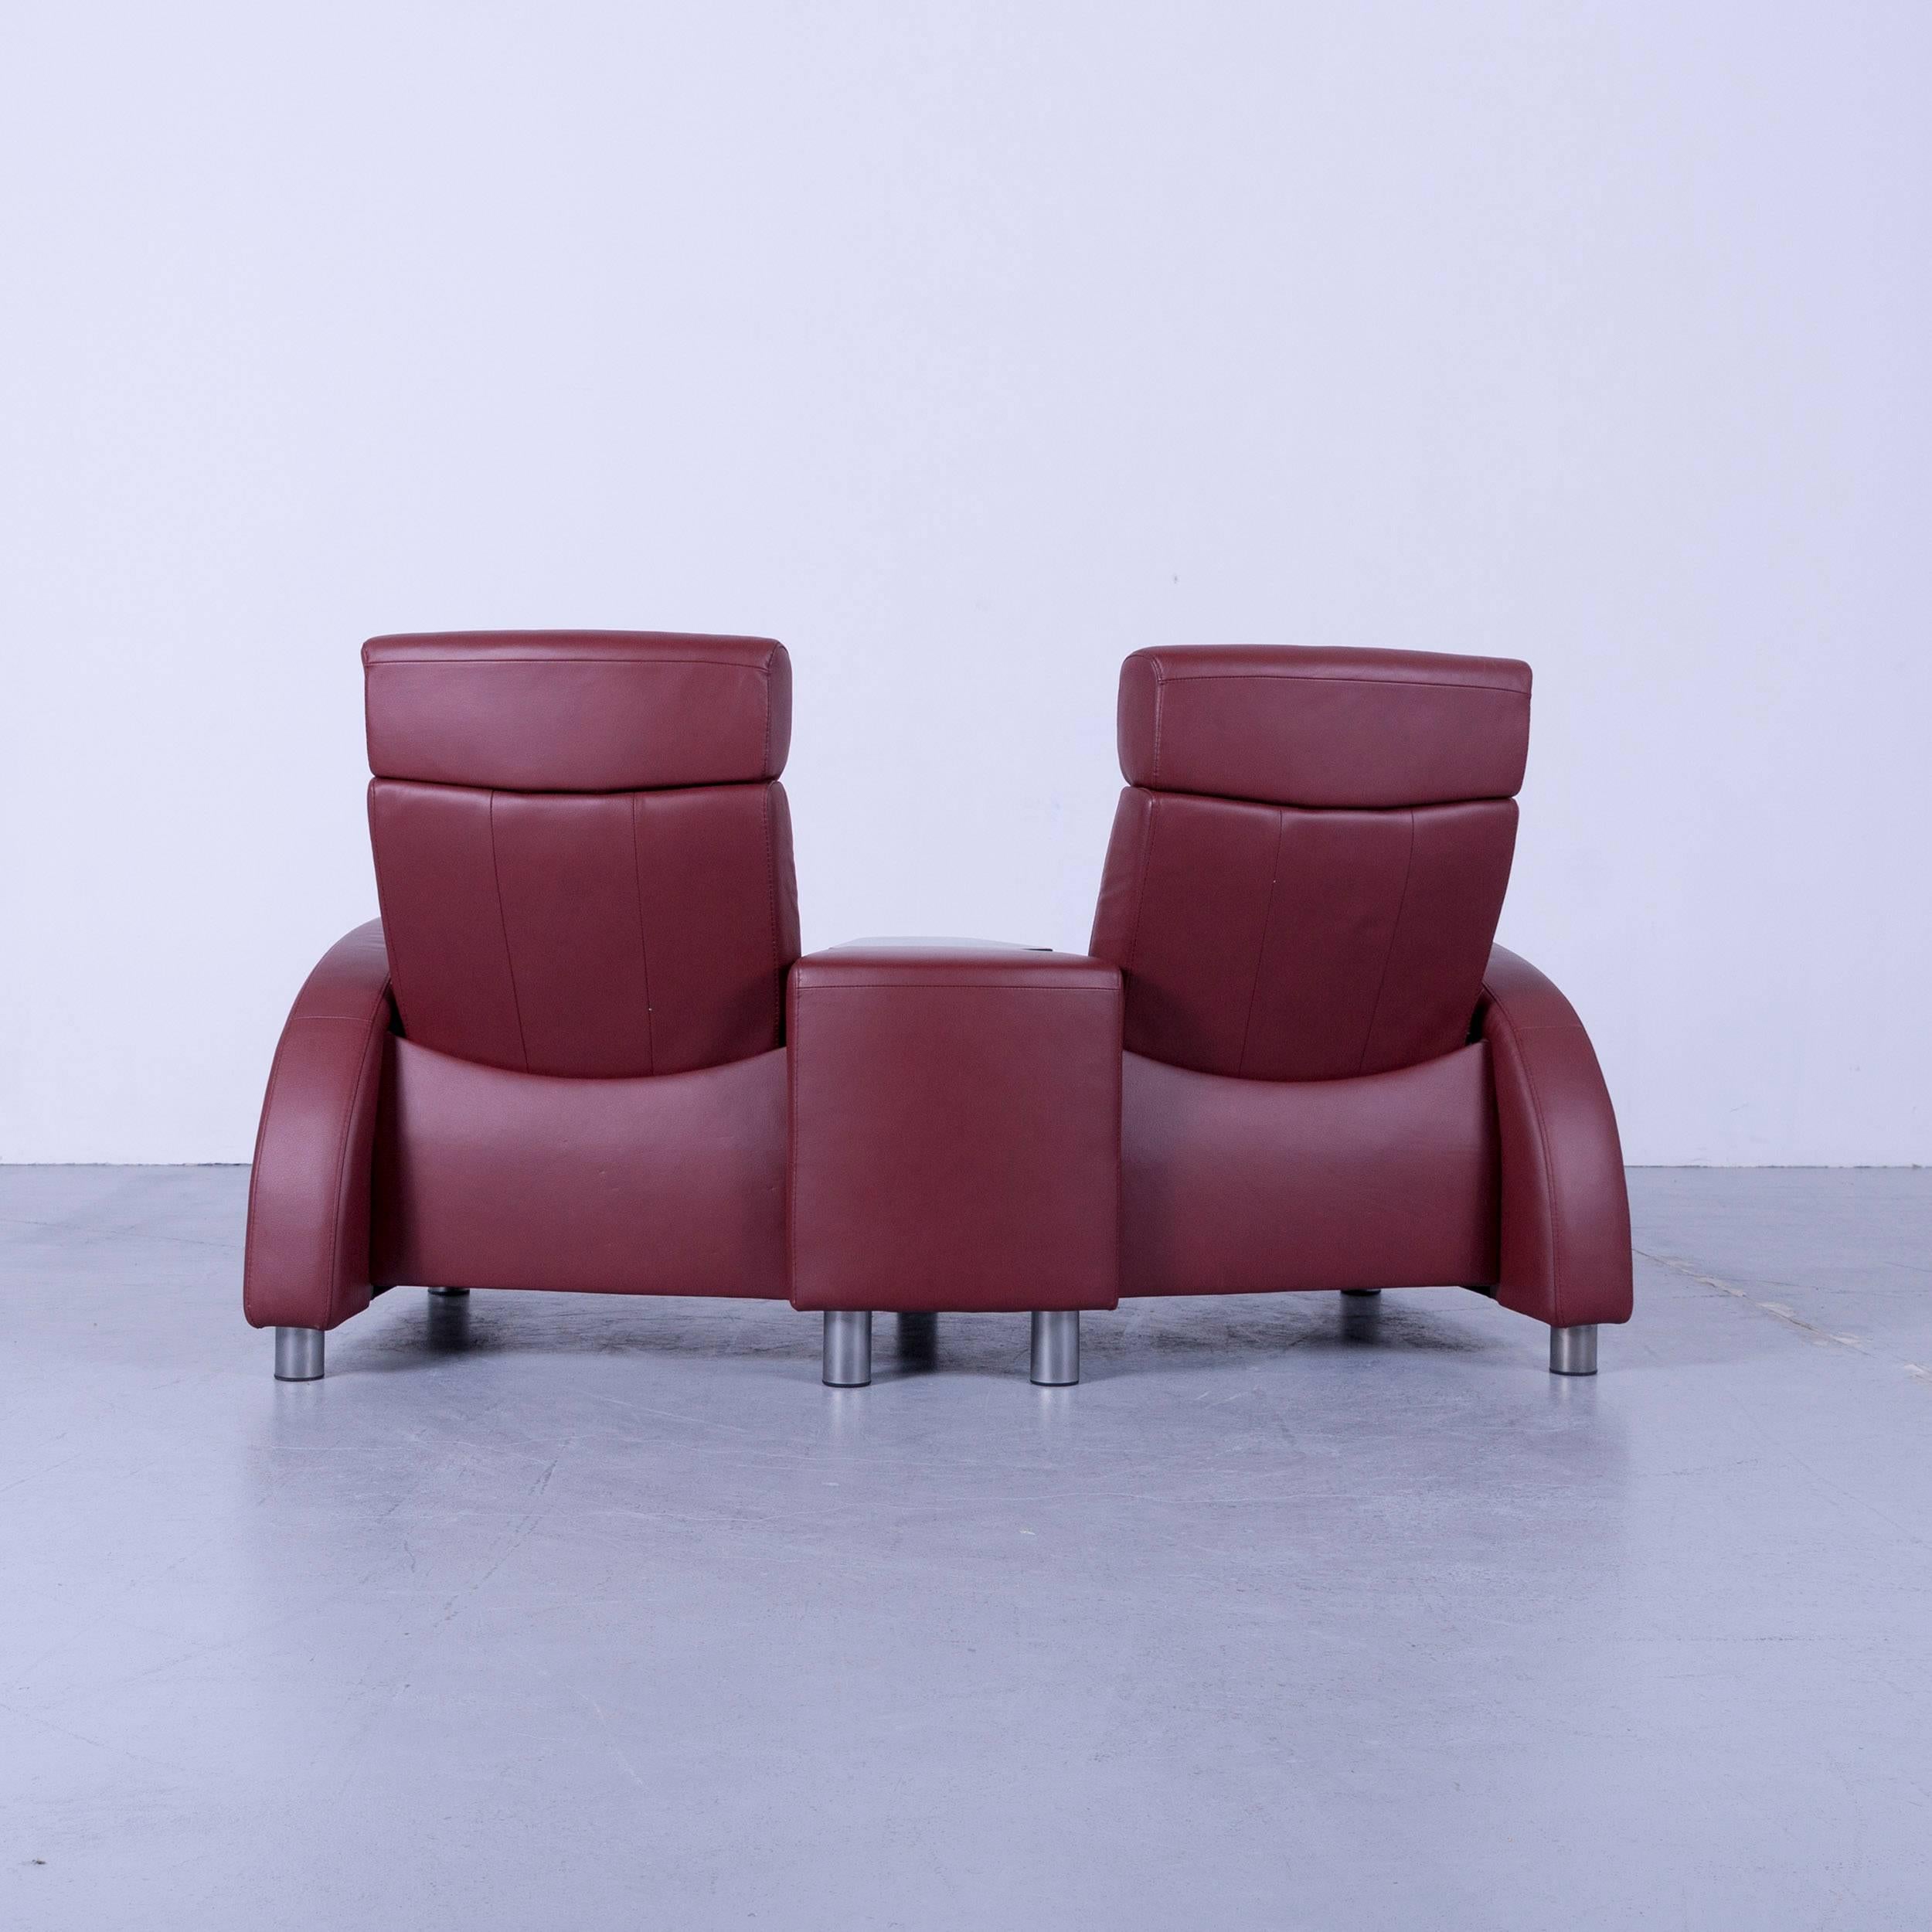 Fauteuil de relaxation en cuir Arion rouge Cinema-Sofa Stressless d'Ekornes 2